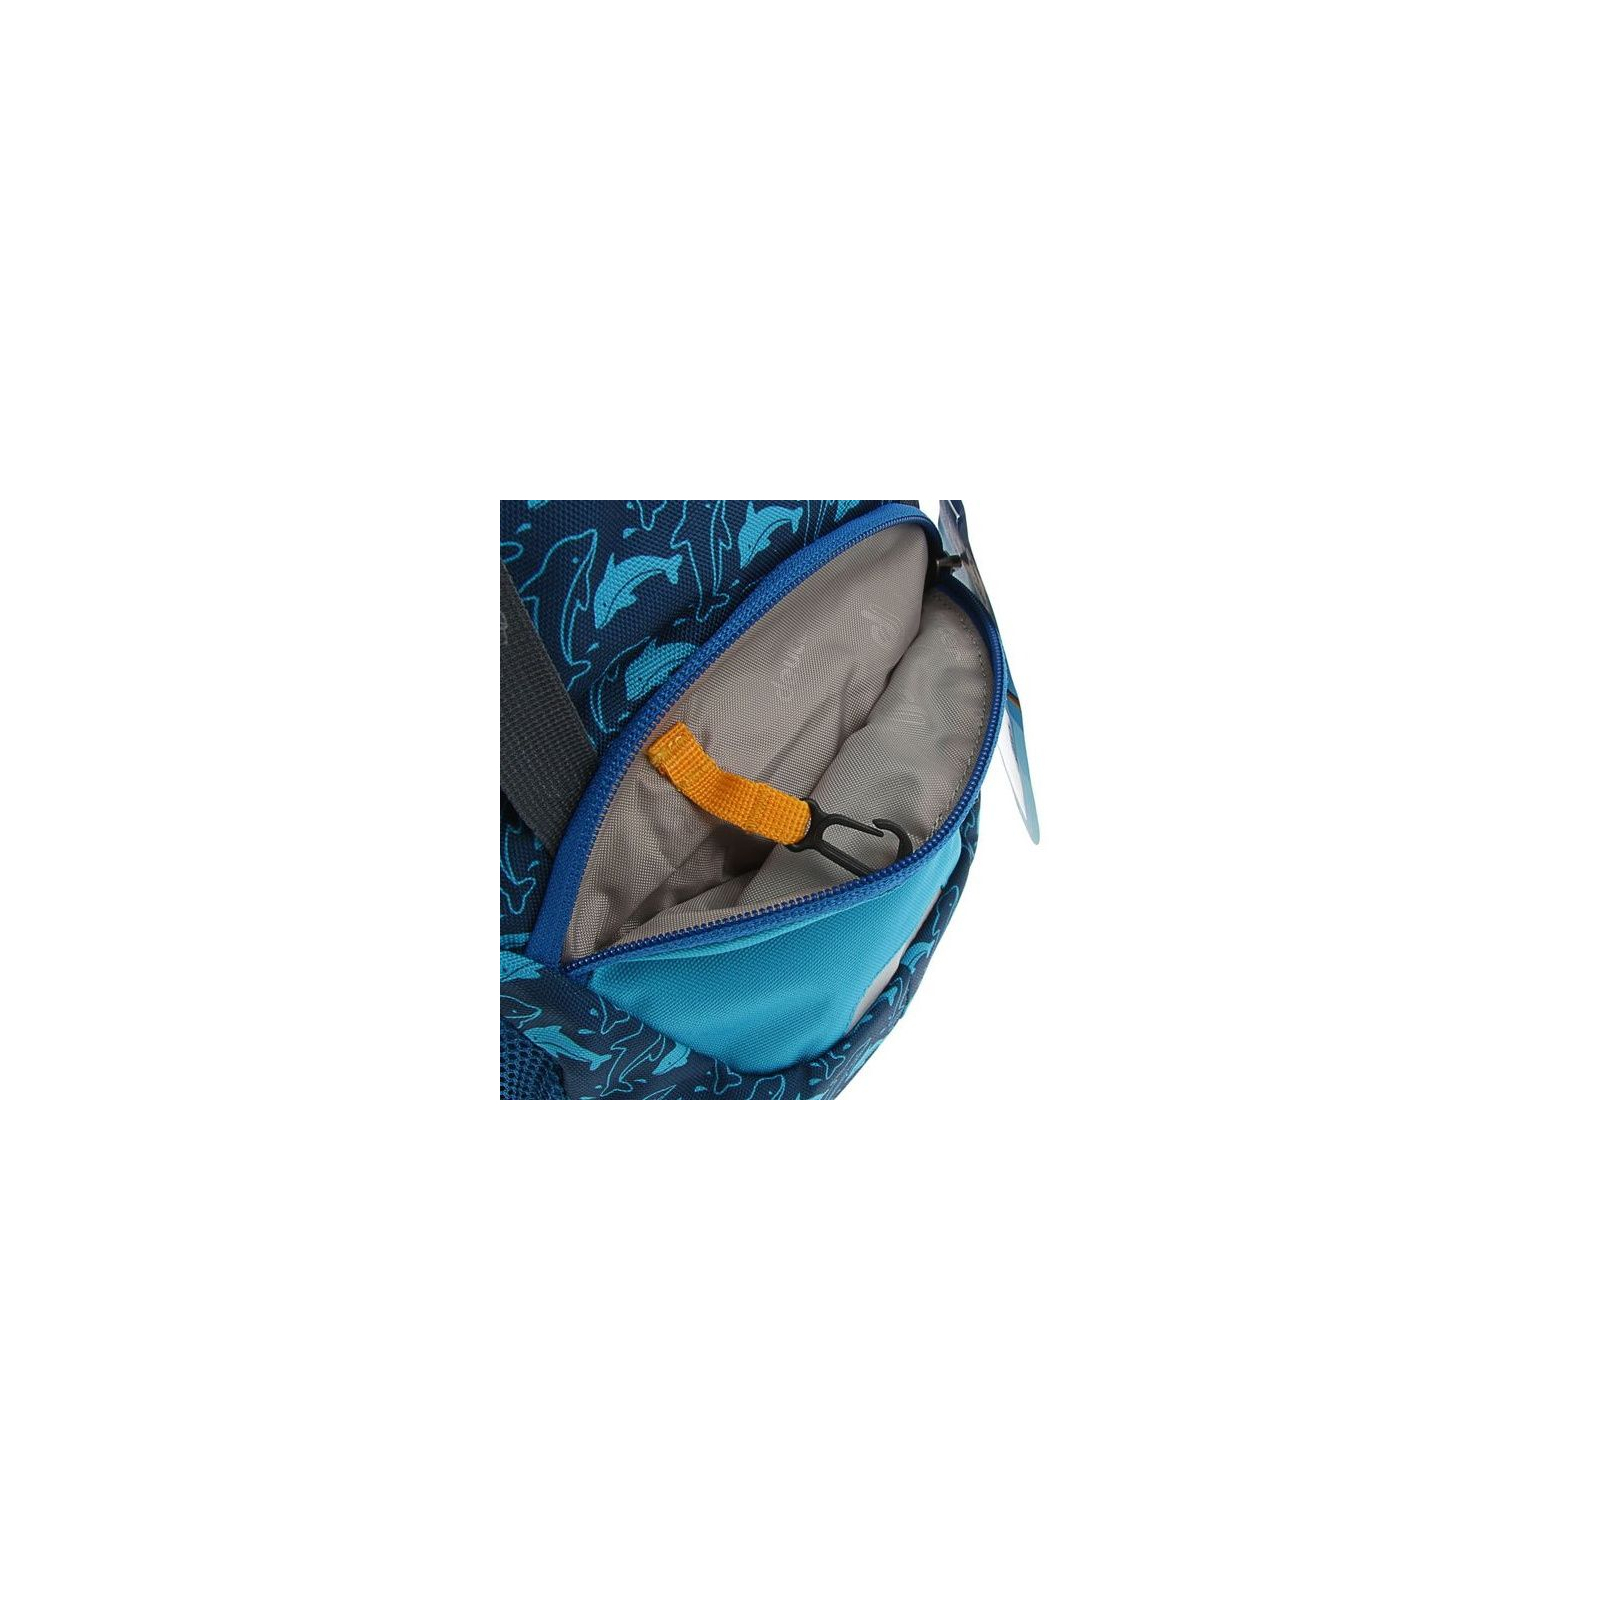 Рюкзак школьный Deuter Schmusebar 3080 ocean (3612017 3080) изображение 4